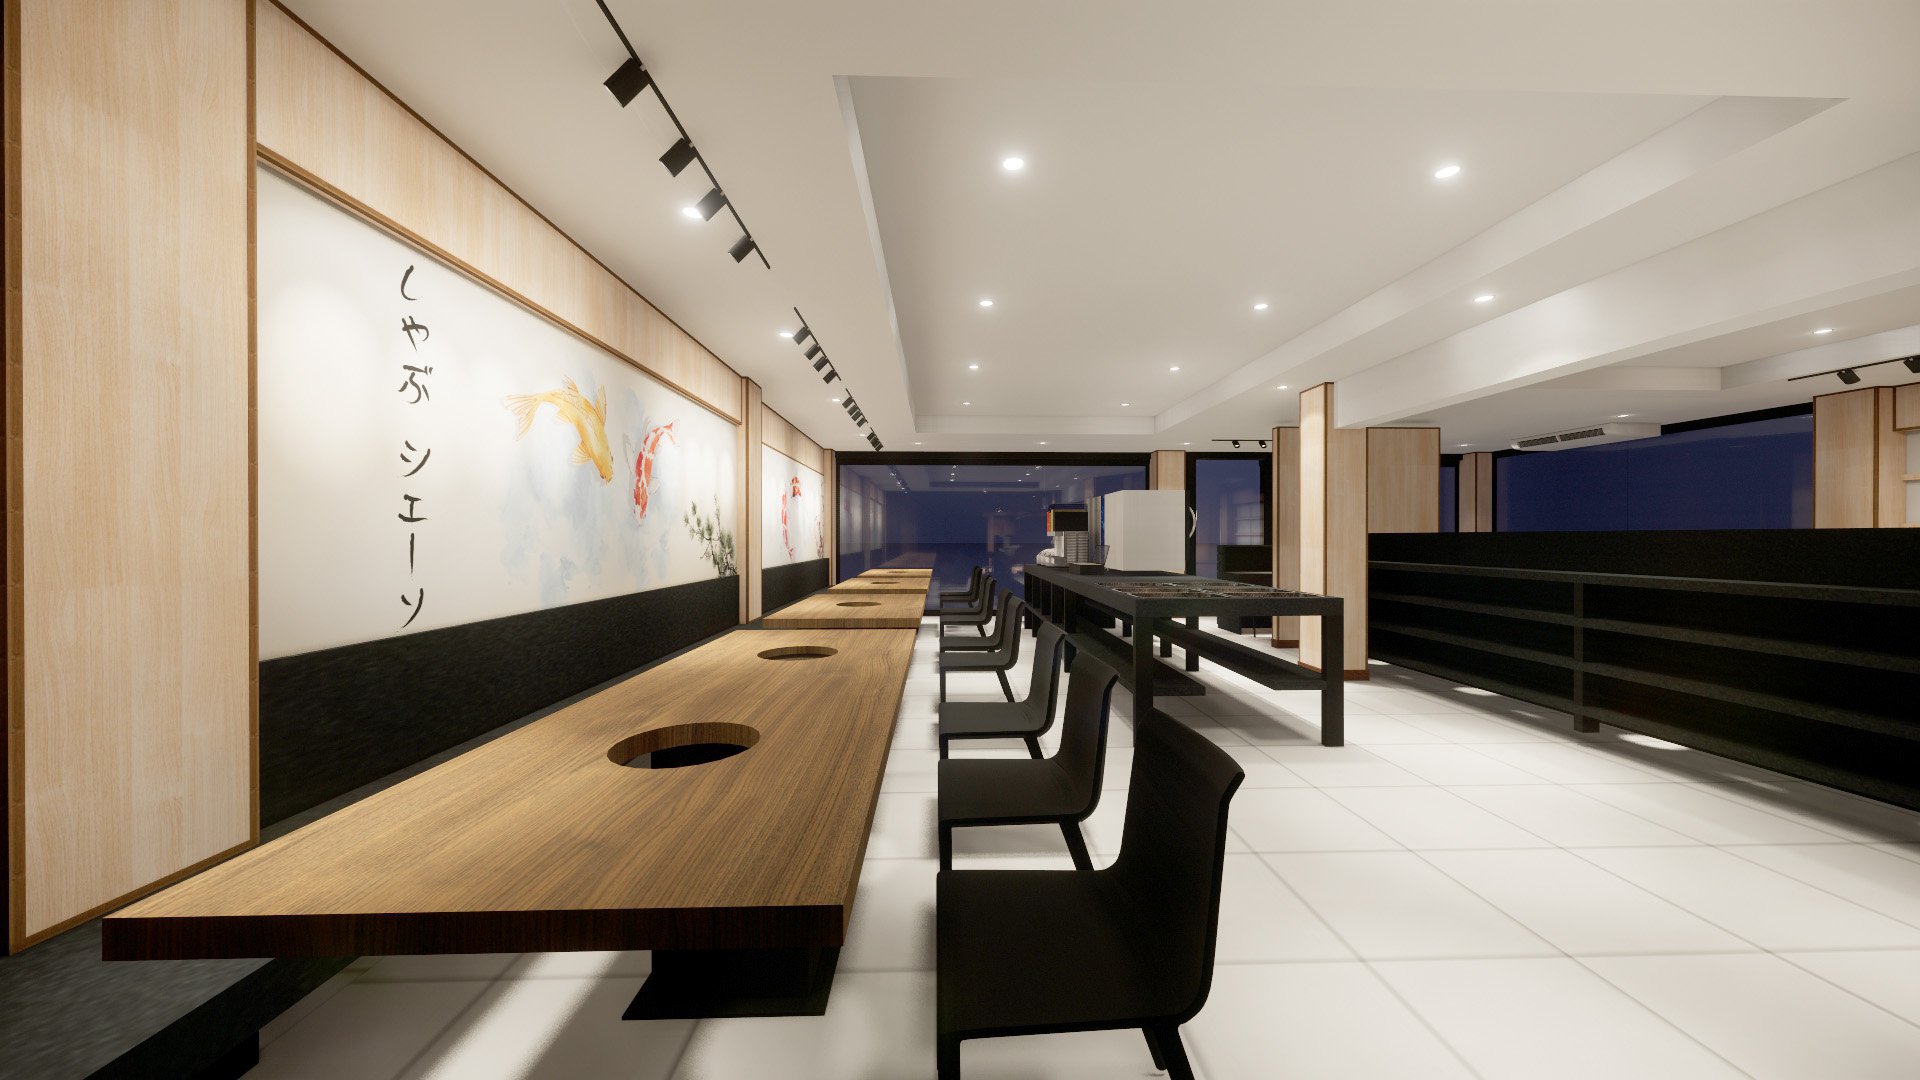 บริการออกแบบระบบ 3D : ร้านชาบูเชน สาขาบางเสาธง